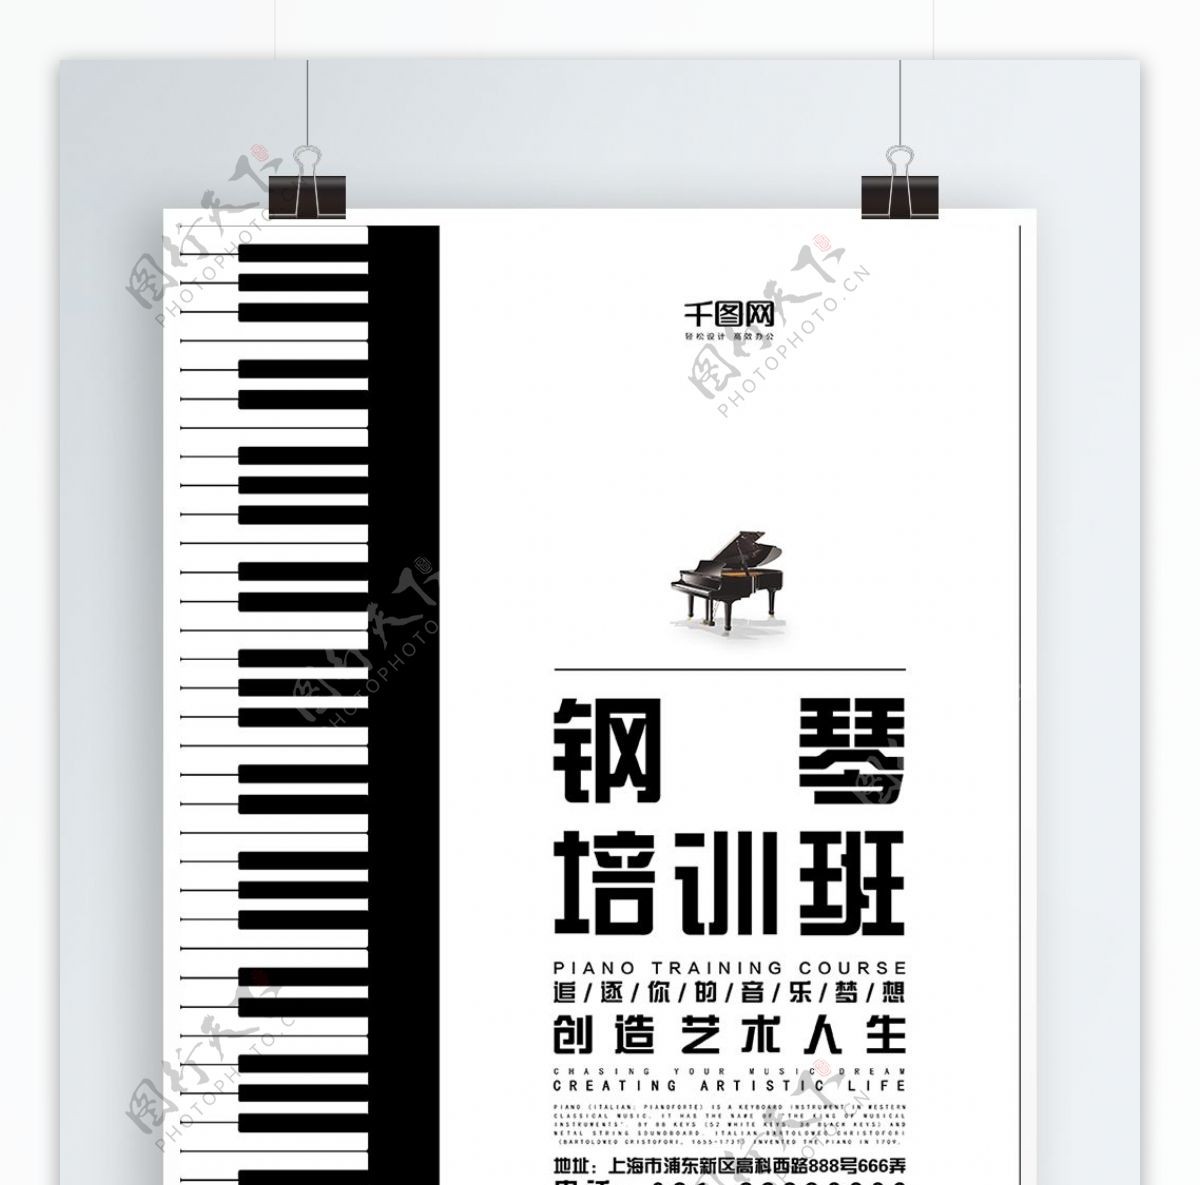 钢琴培训班艺术音乐兴趣班海报